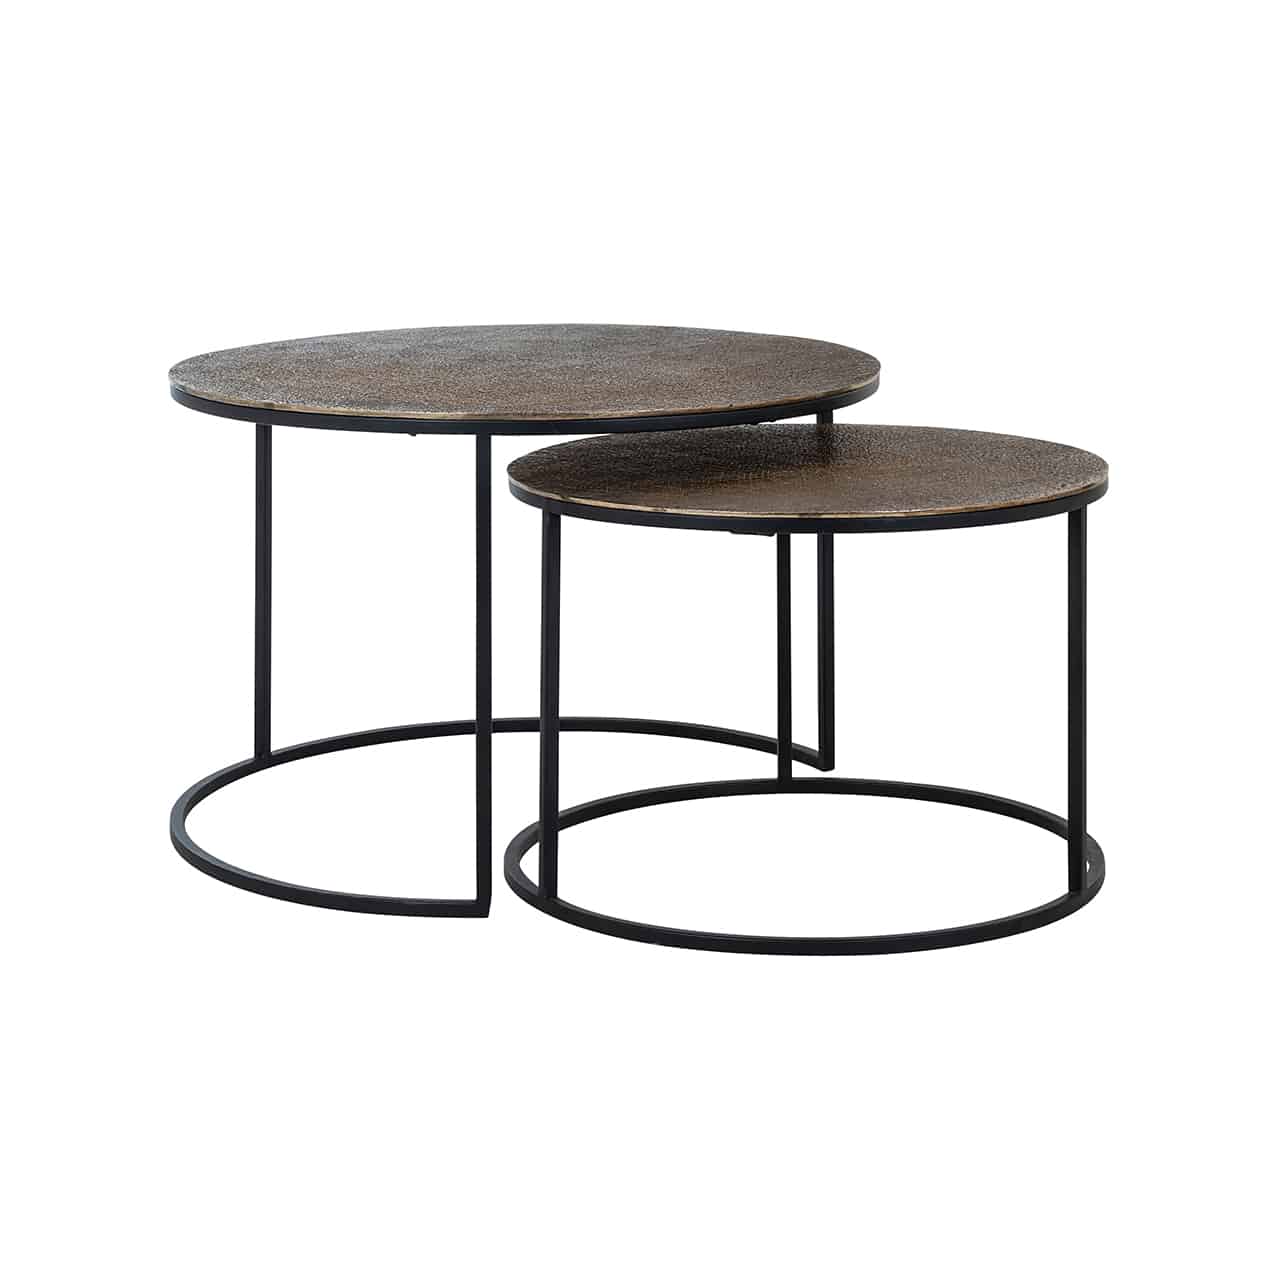 Couchtisch 2er Set;  zwei verschieden hohe runde Tische  mit einem Gestell aus schwarzem Metall und einer matt goldenen Tischplatte, die zum Teil ineinandergeschoben sind.